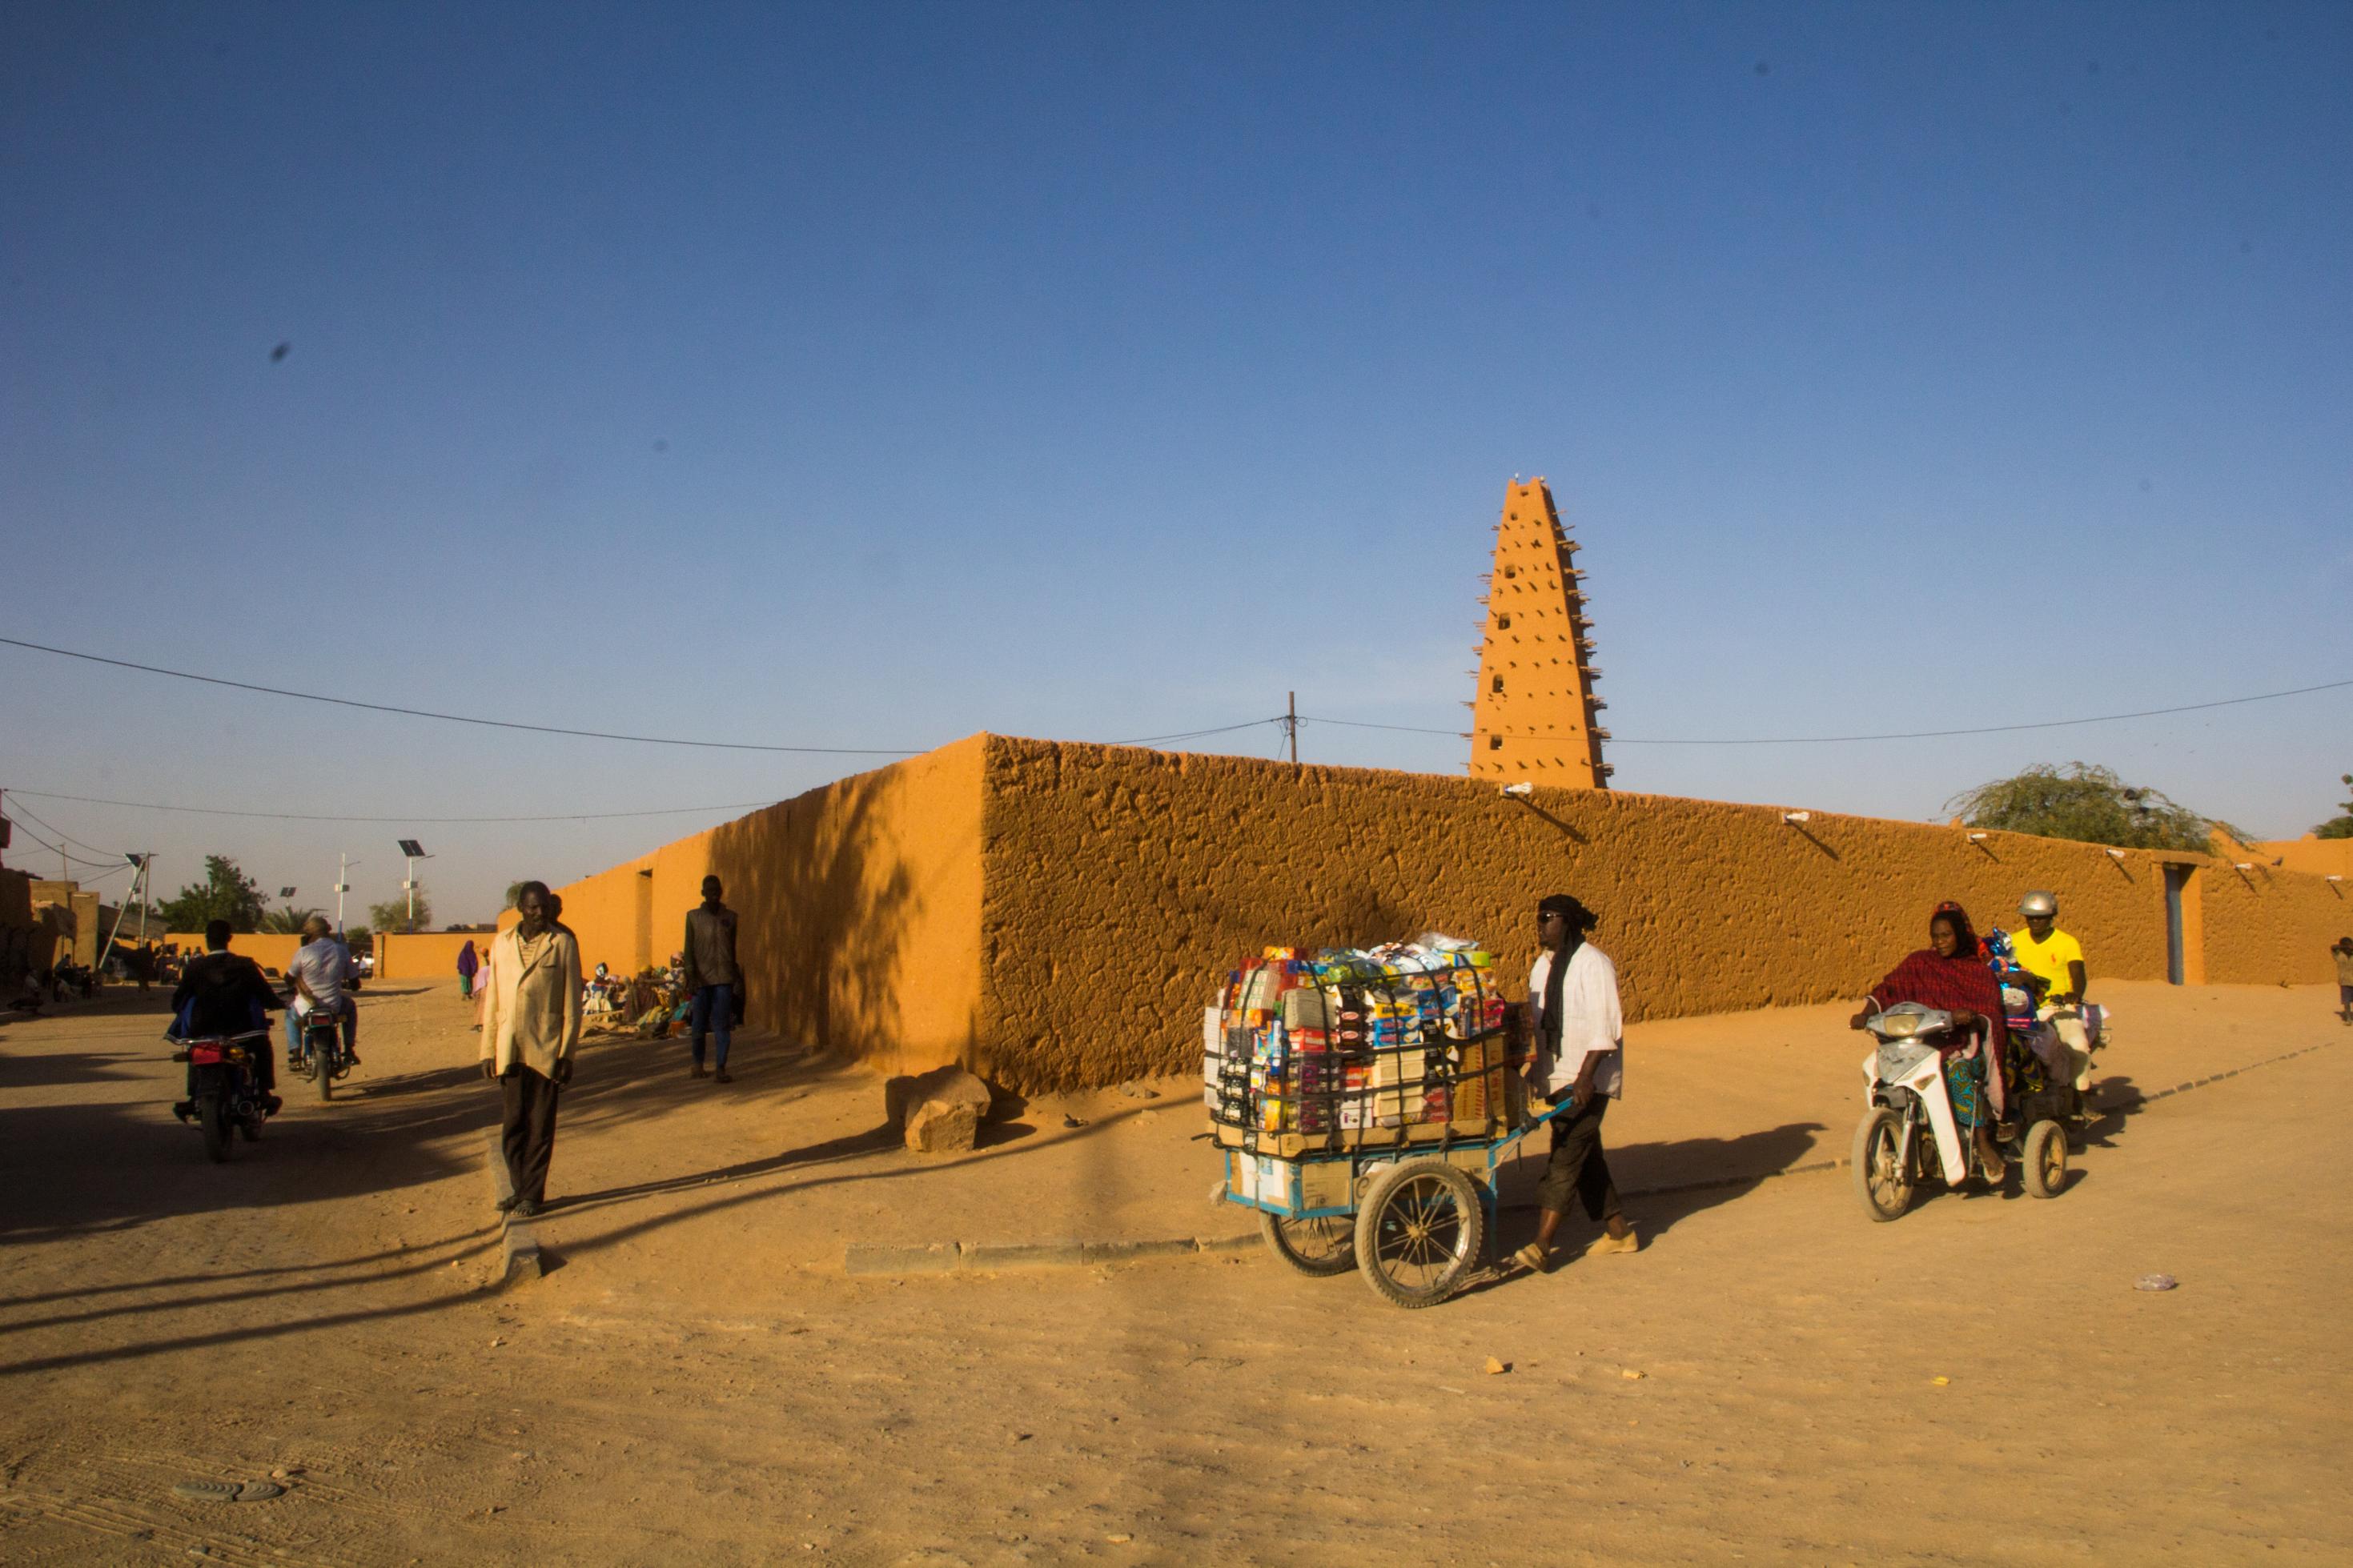 Der Lehmbau einer Moschee, im Vordergrund ein Mann mit Handkarren, darauf unterschiedliche Waren. Die Straße ist ungepflastert.